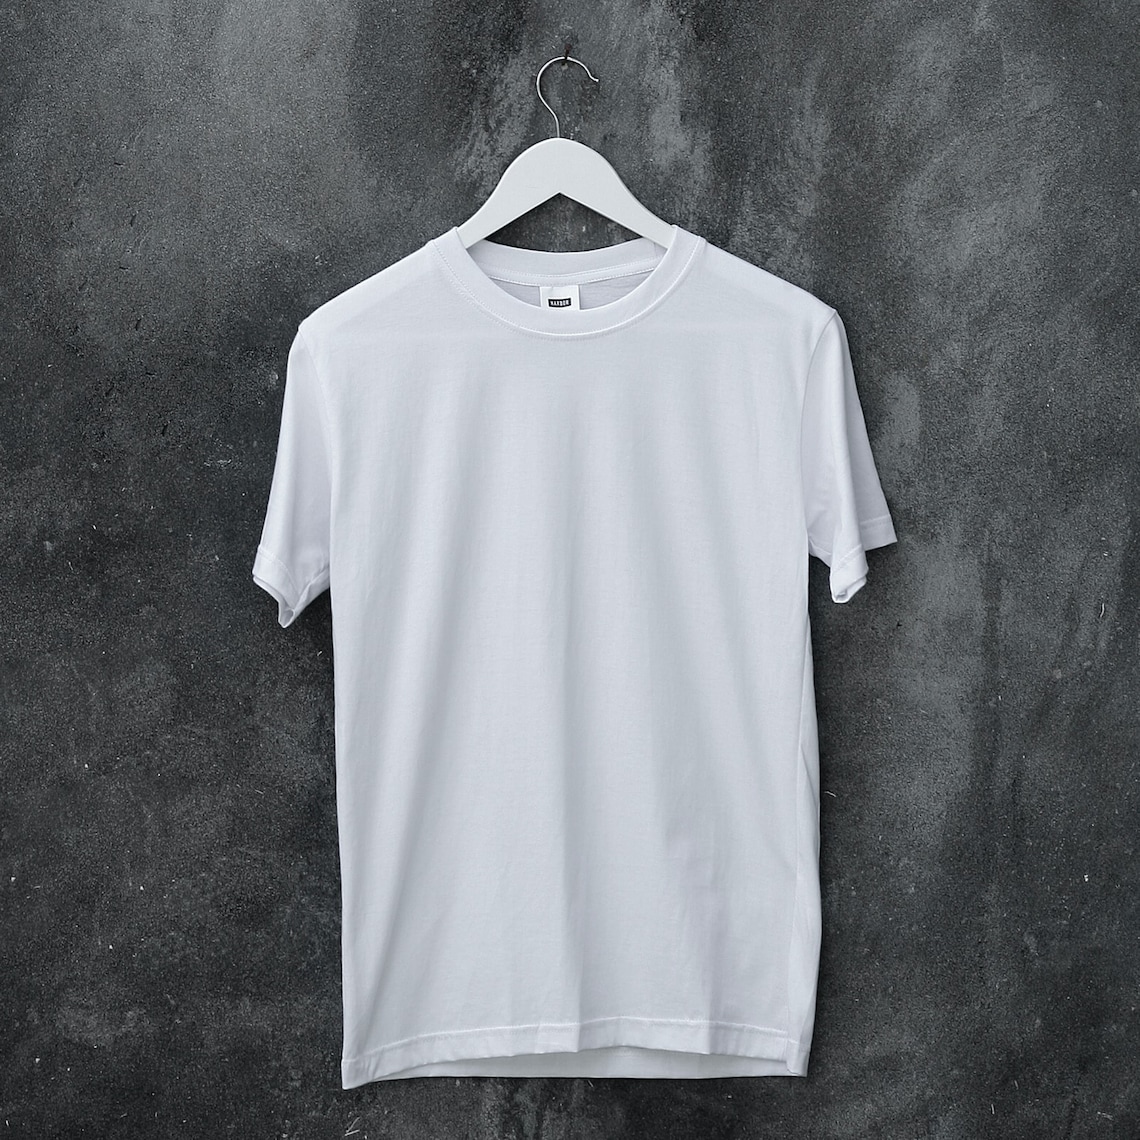 T Shirt Mockup White